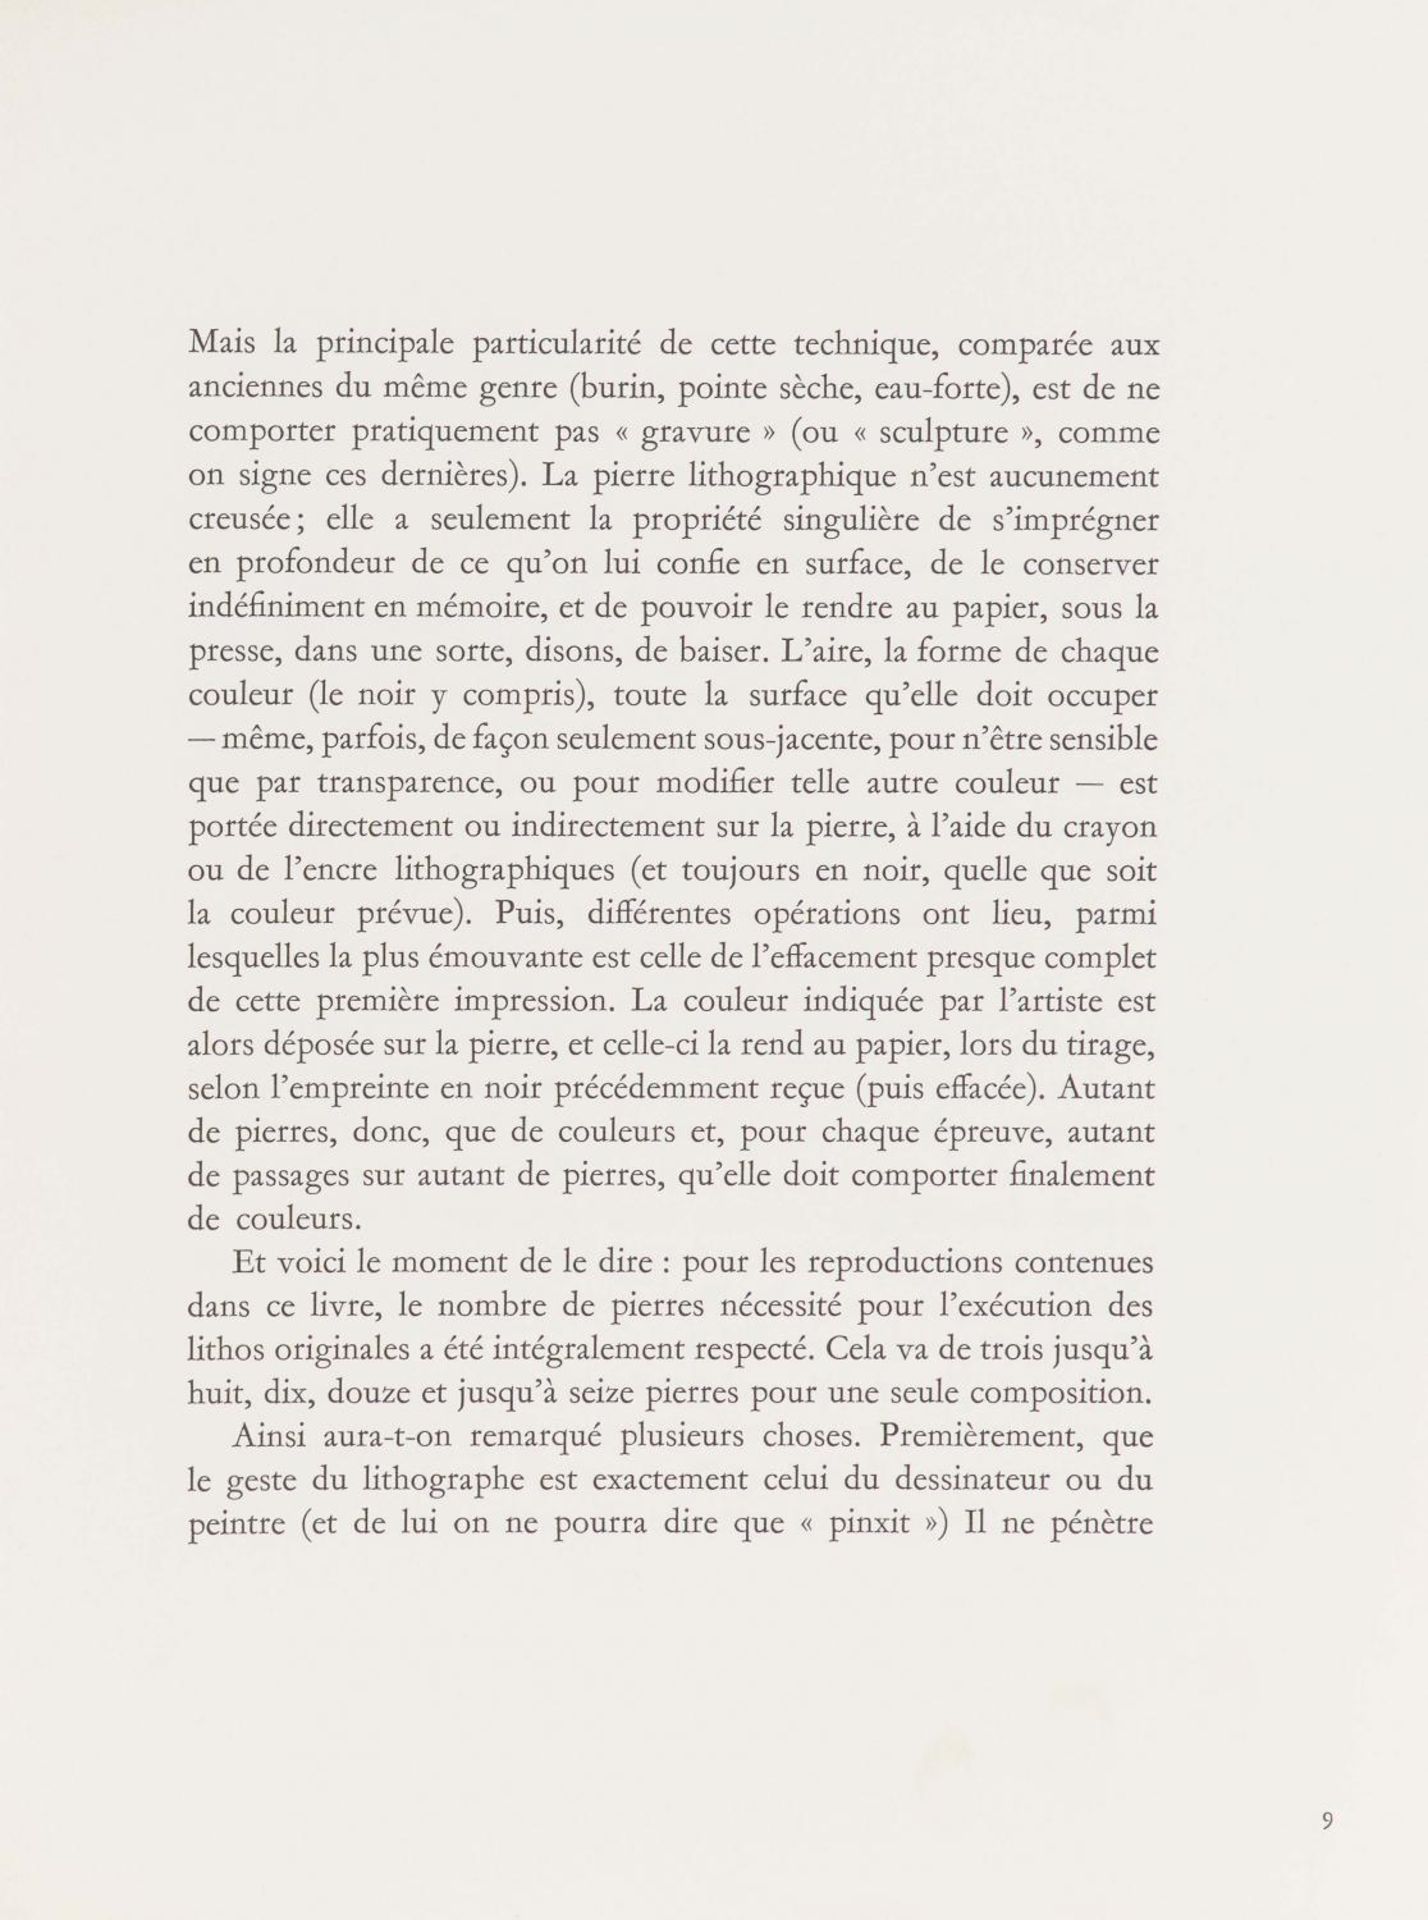 Braque, Georges1881 Argenteuil - 1963 ParisLithographe. 1963. Komplettes Buch (Deluxe Edition) mit - Bild 12 aus 13